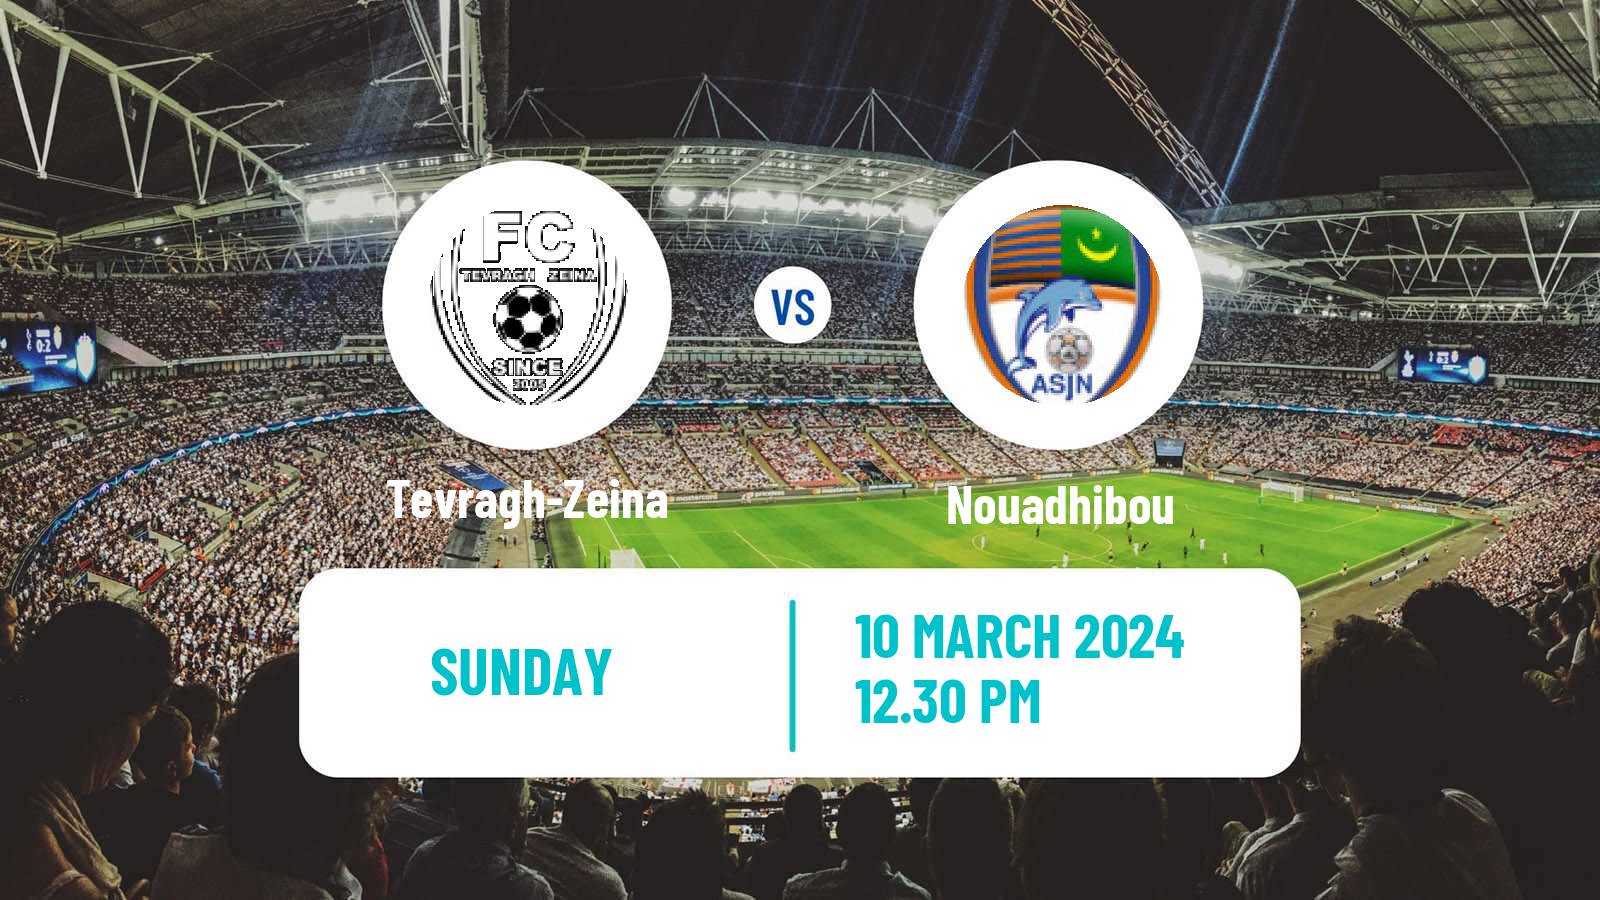 Soccer Mauritania Ligue 1 Tevragh-Zeina - Nouadhibou